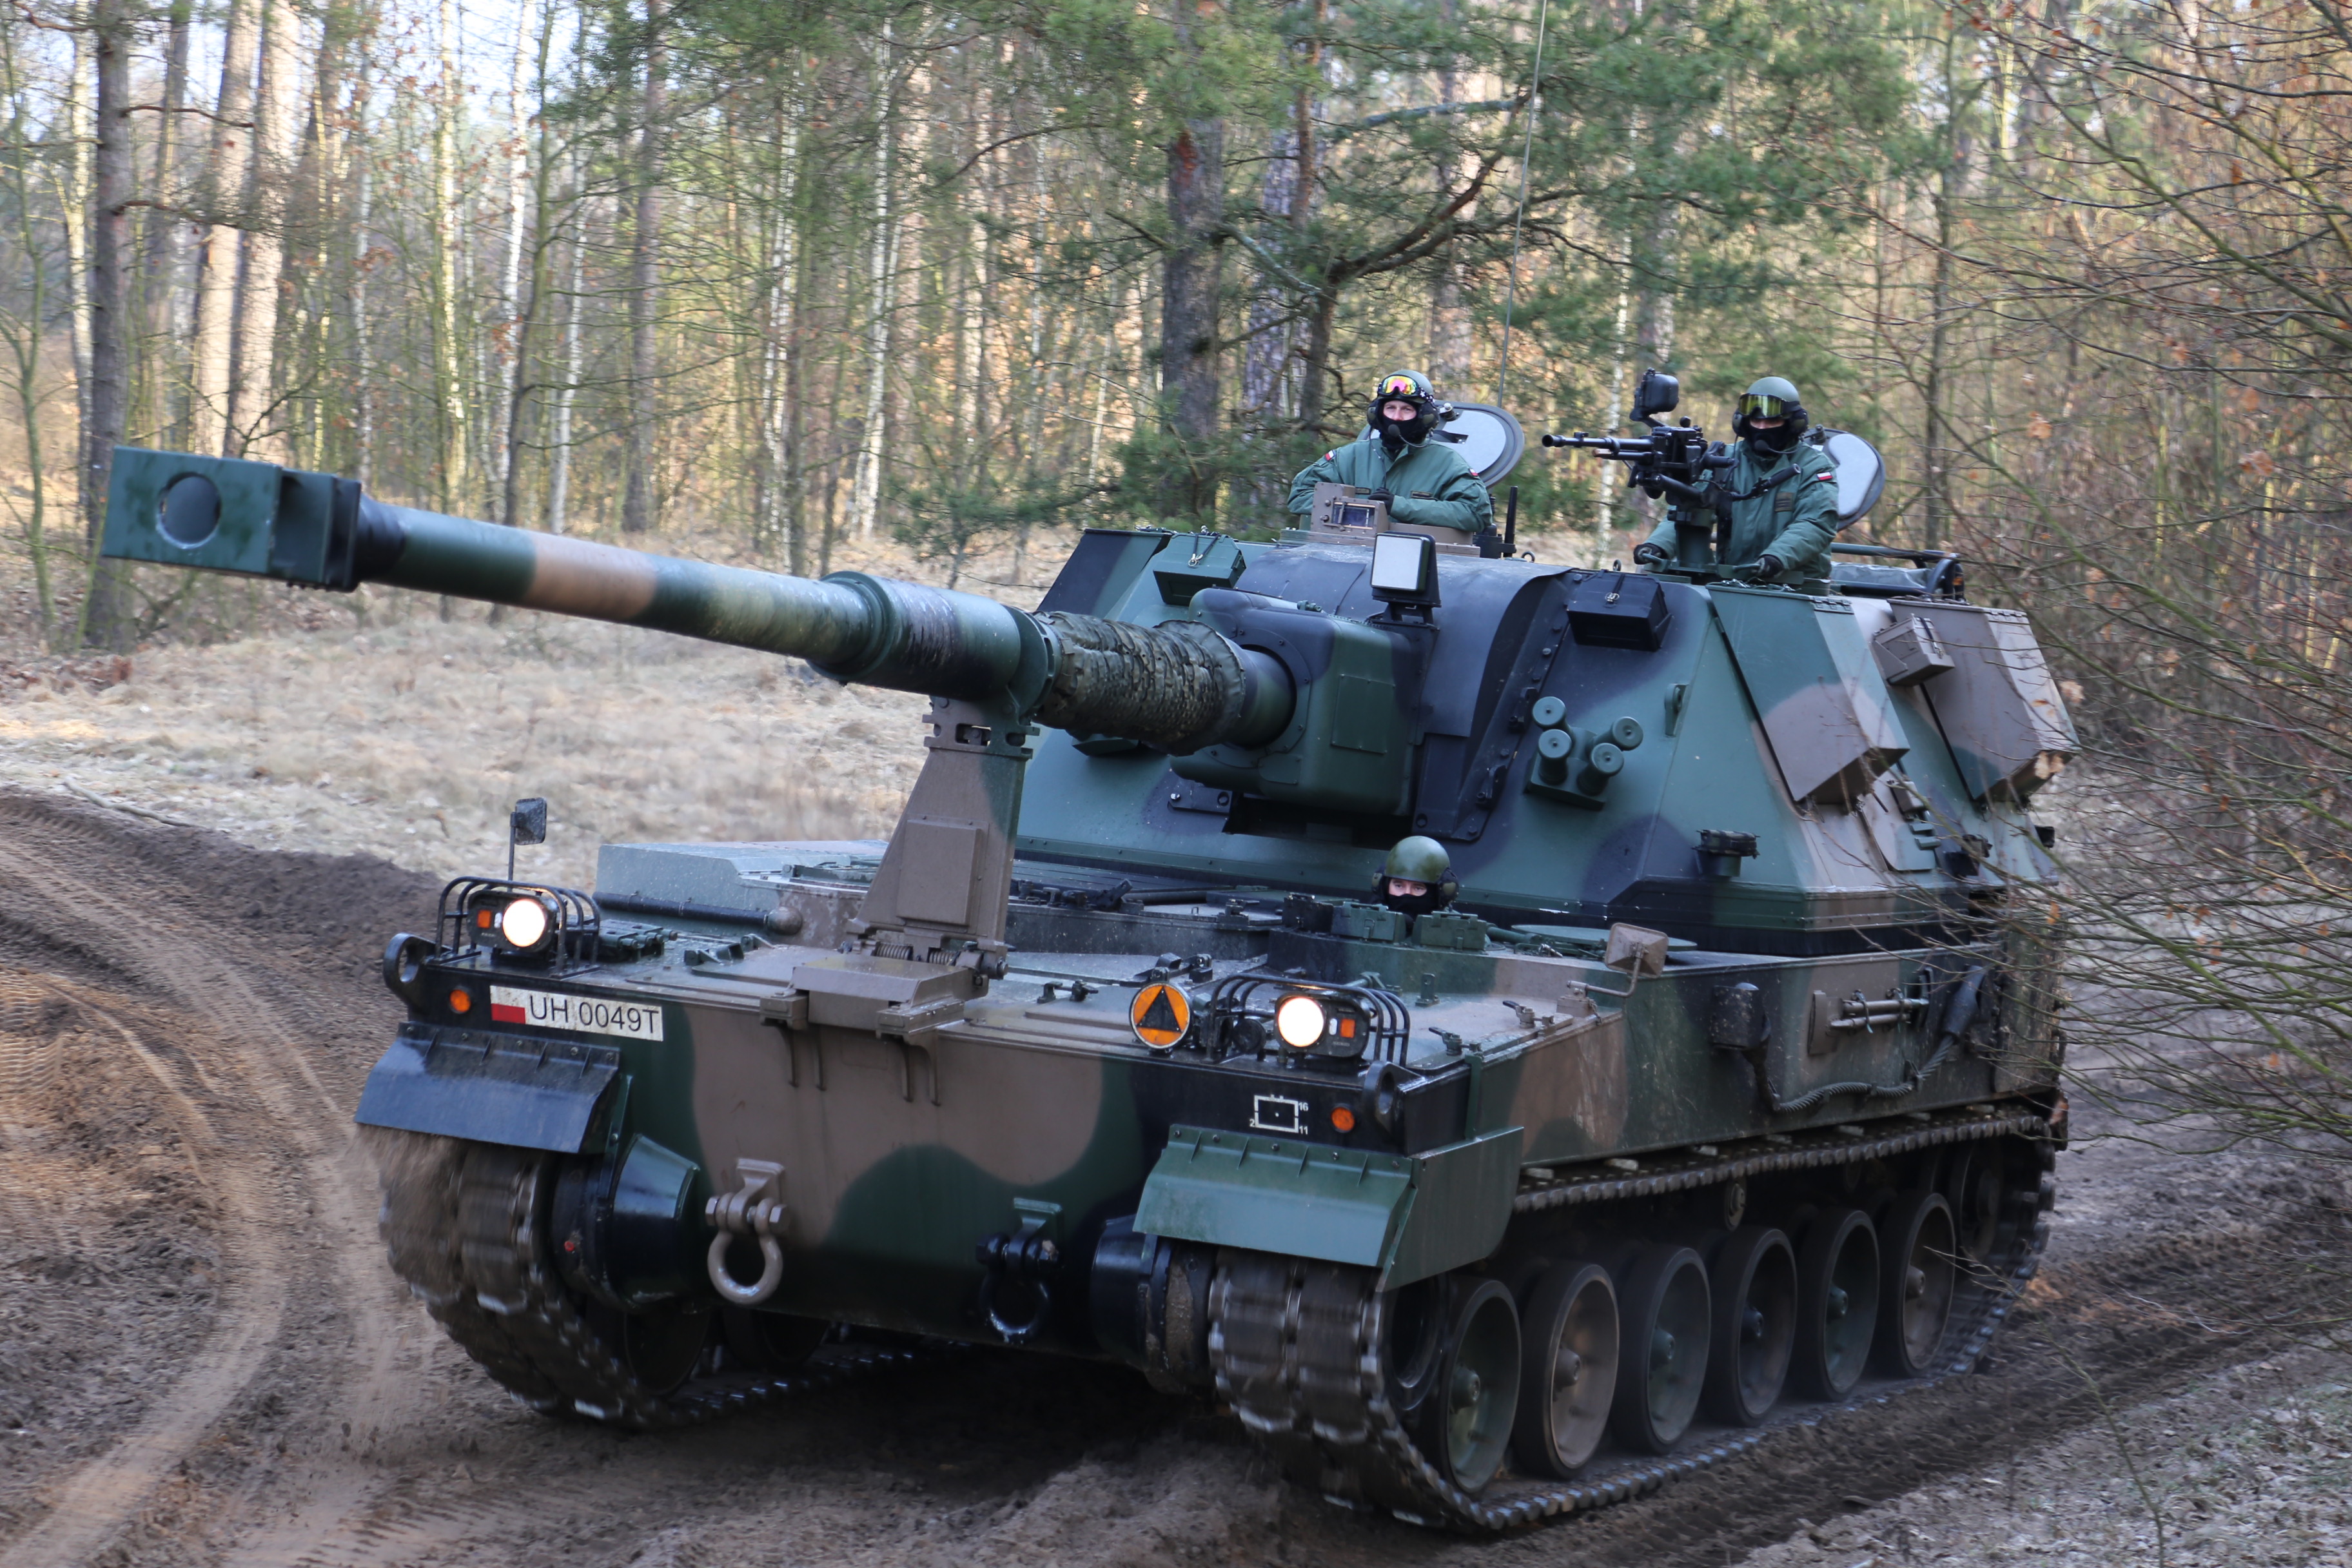 Haubice Krab będą stanowić uzbrojenie dywizjonu artylerii 1 BPanc., zlokalizowanego w Siedlcach. Fot. Rafał Surdacki/Defence24.pl.